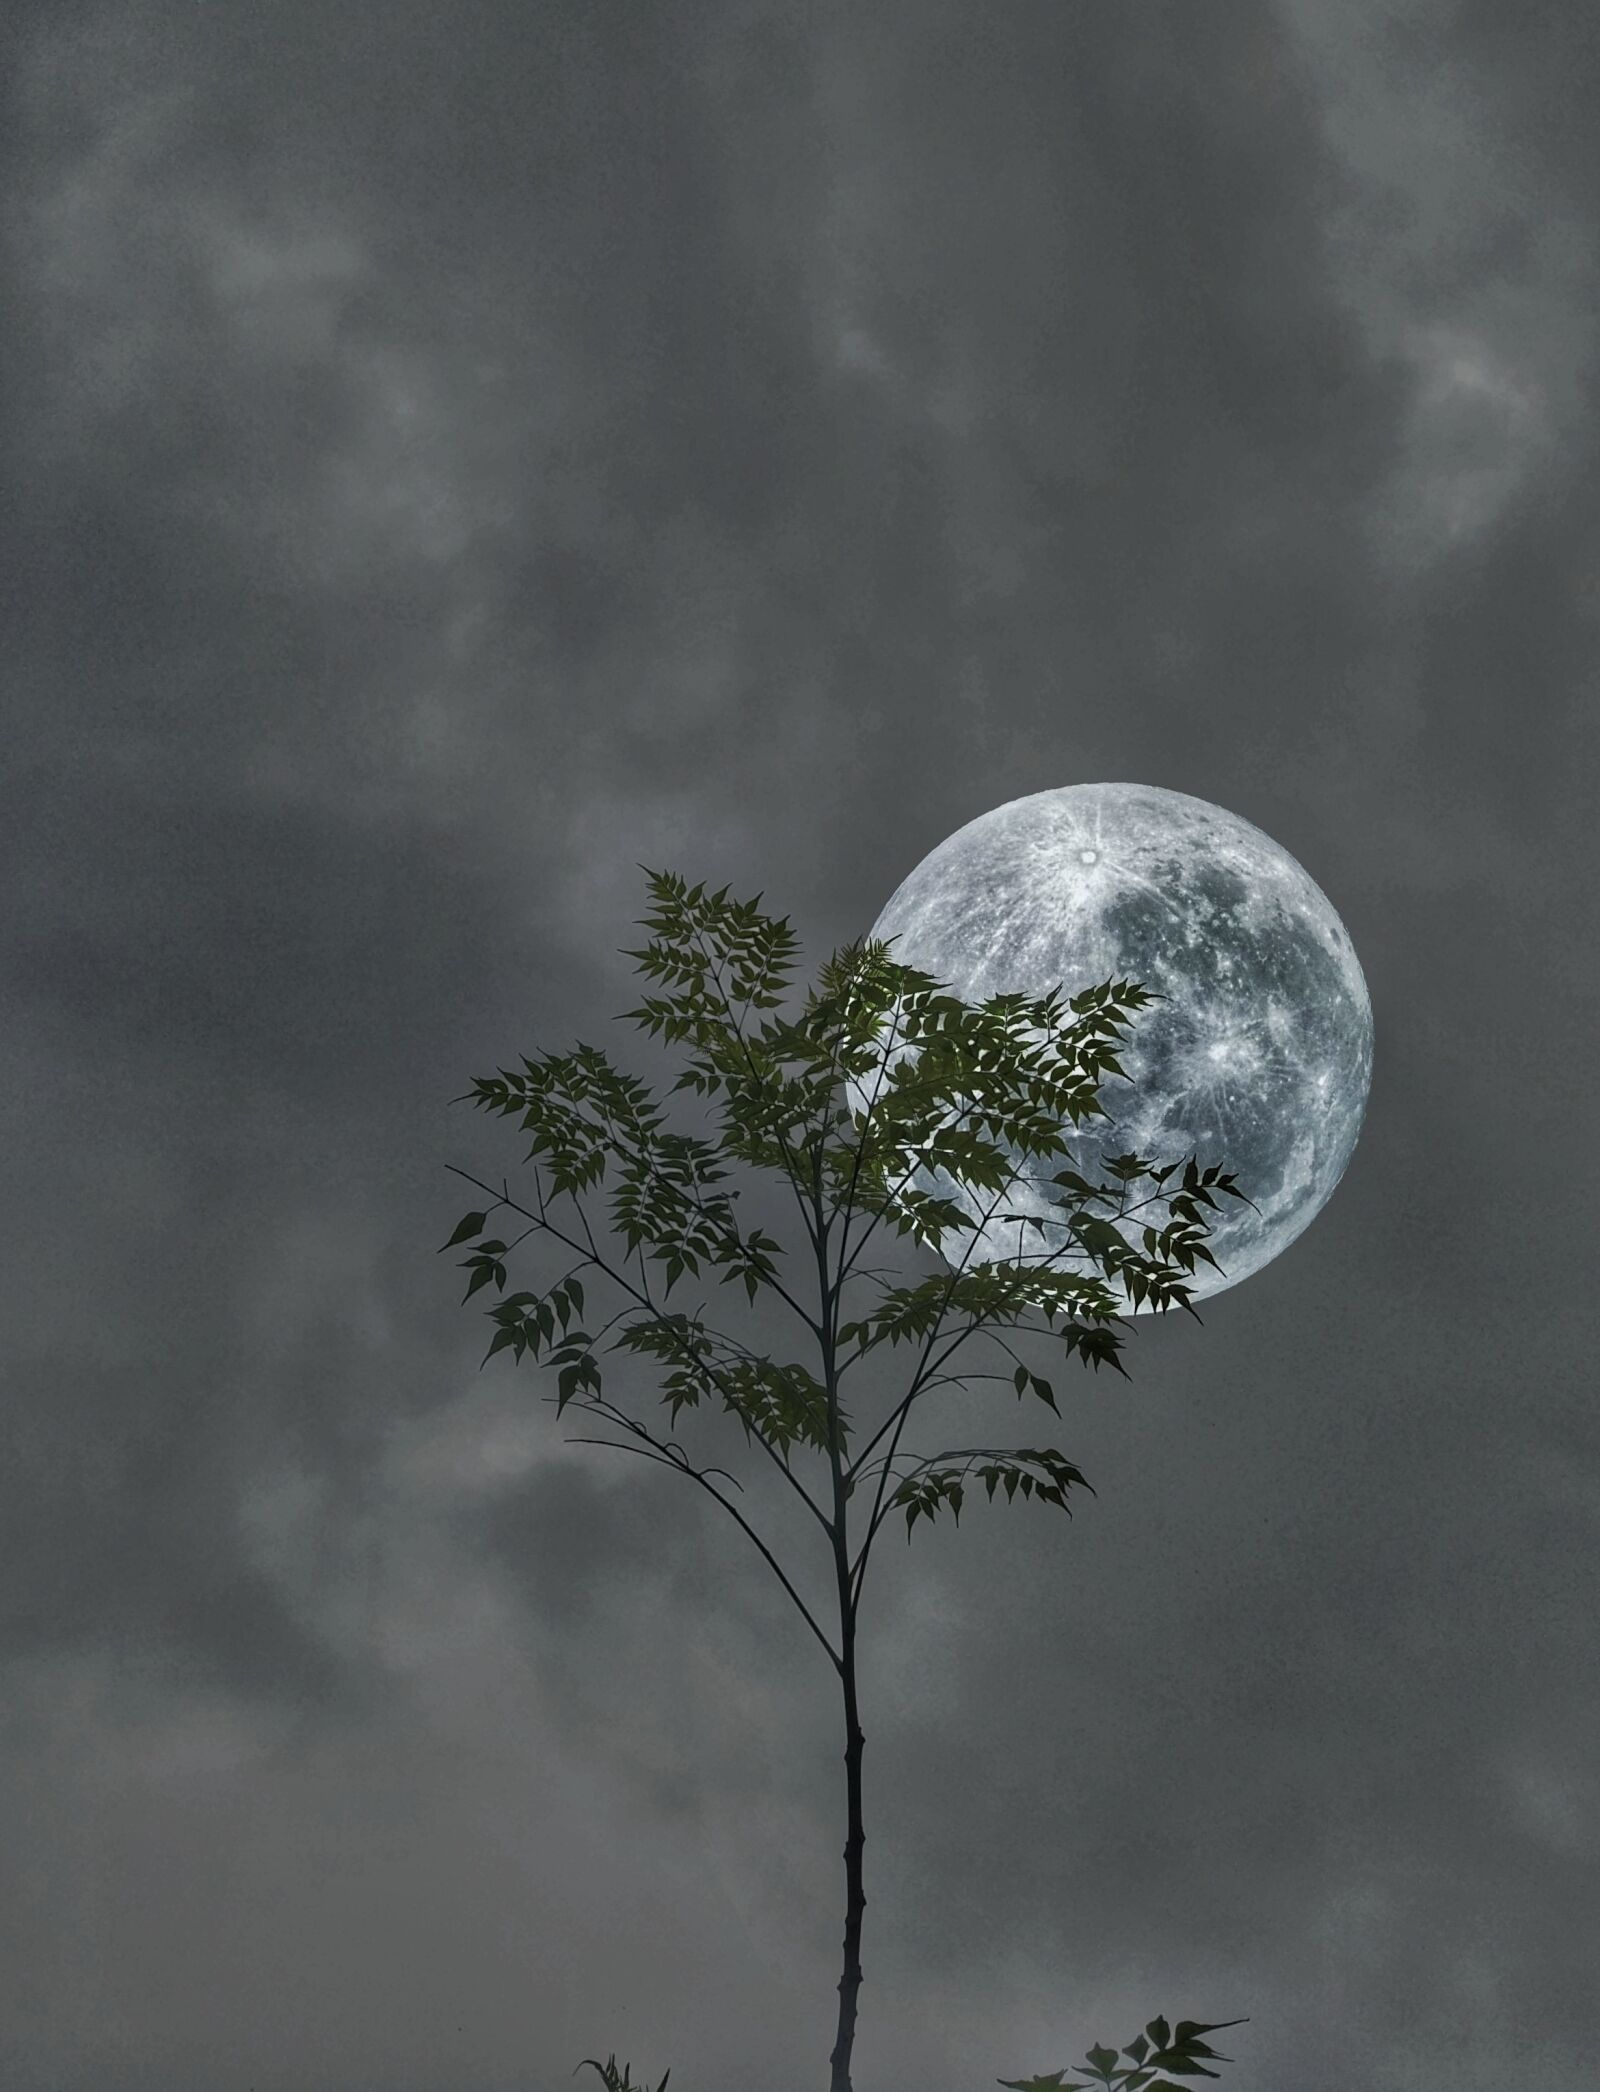 OPPO CPH1701 sample photo. Moon, tree, sky photography